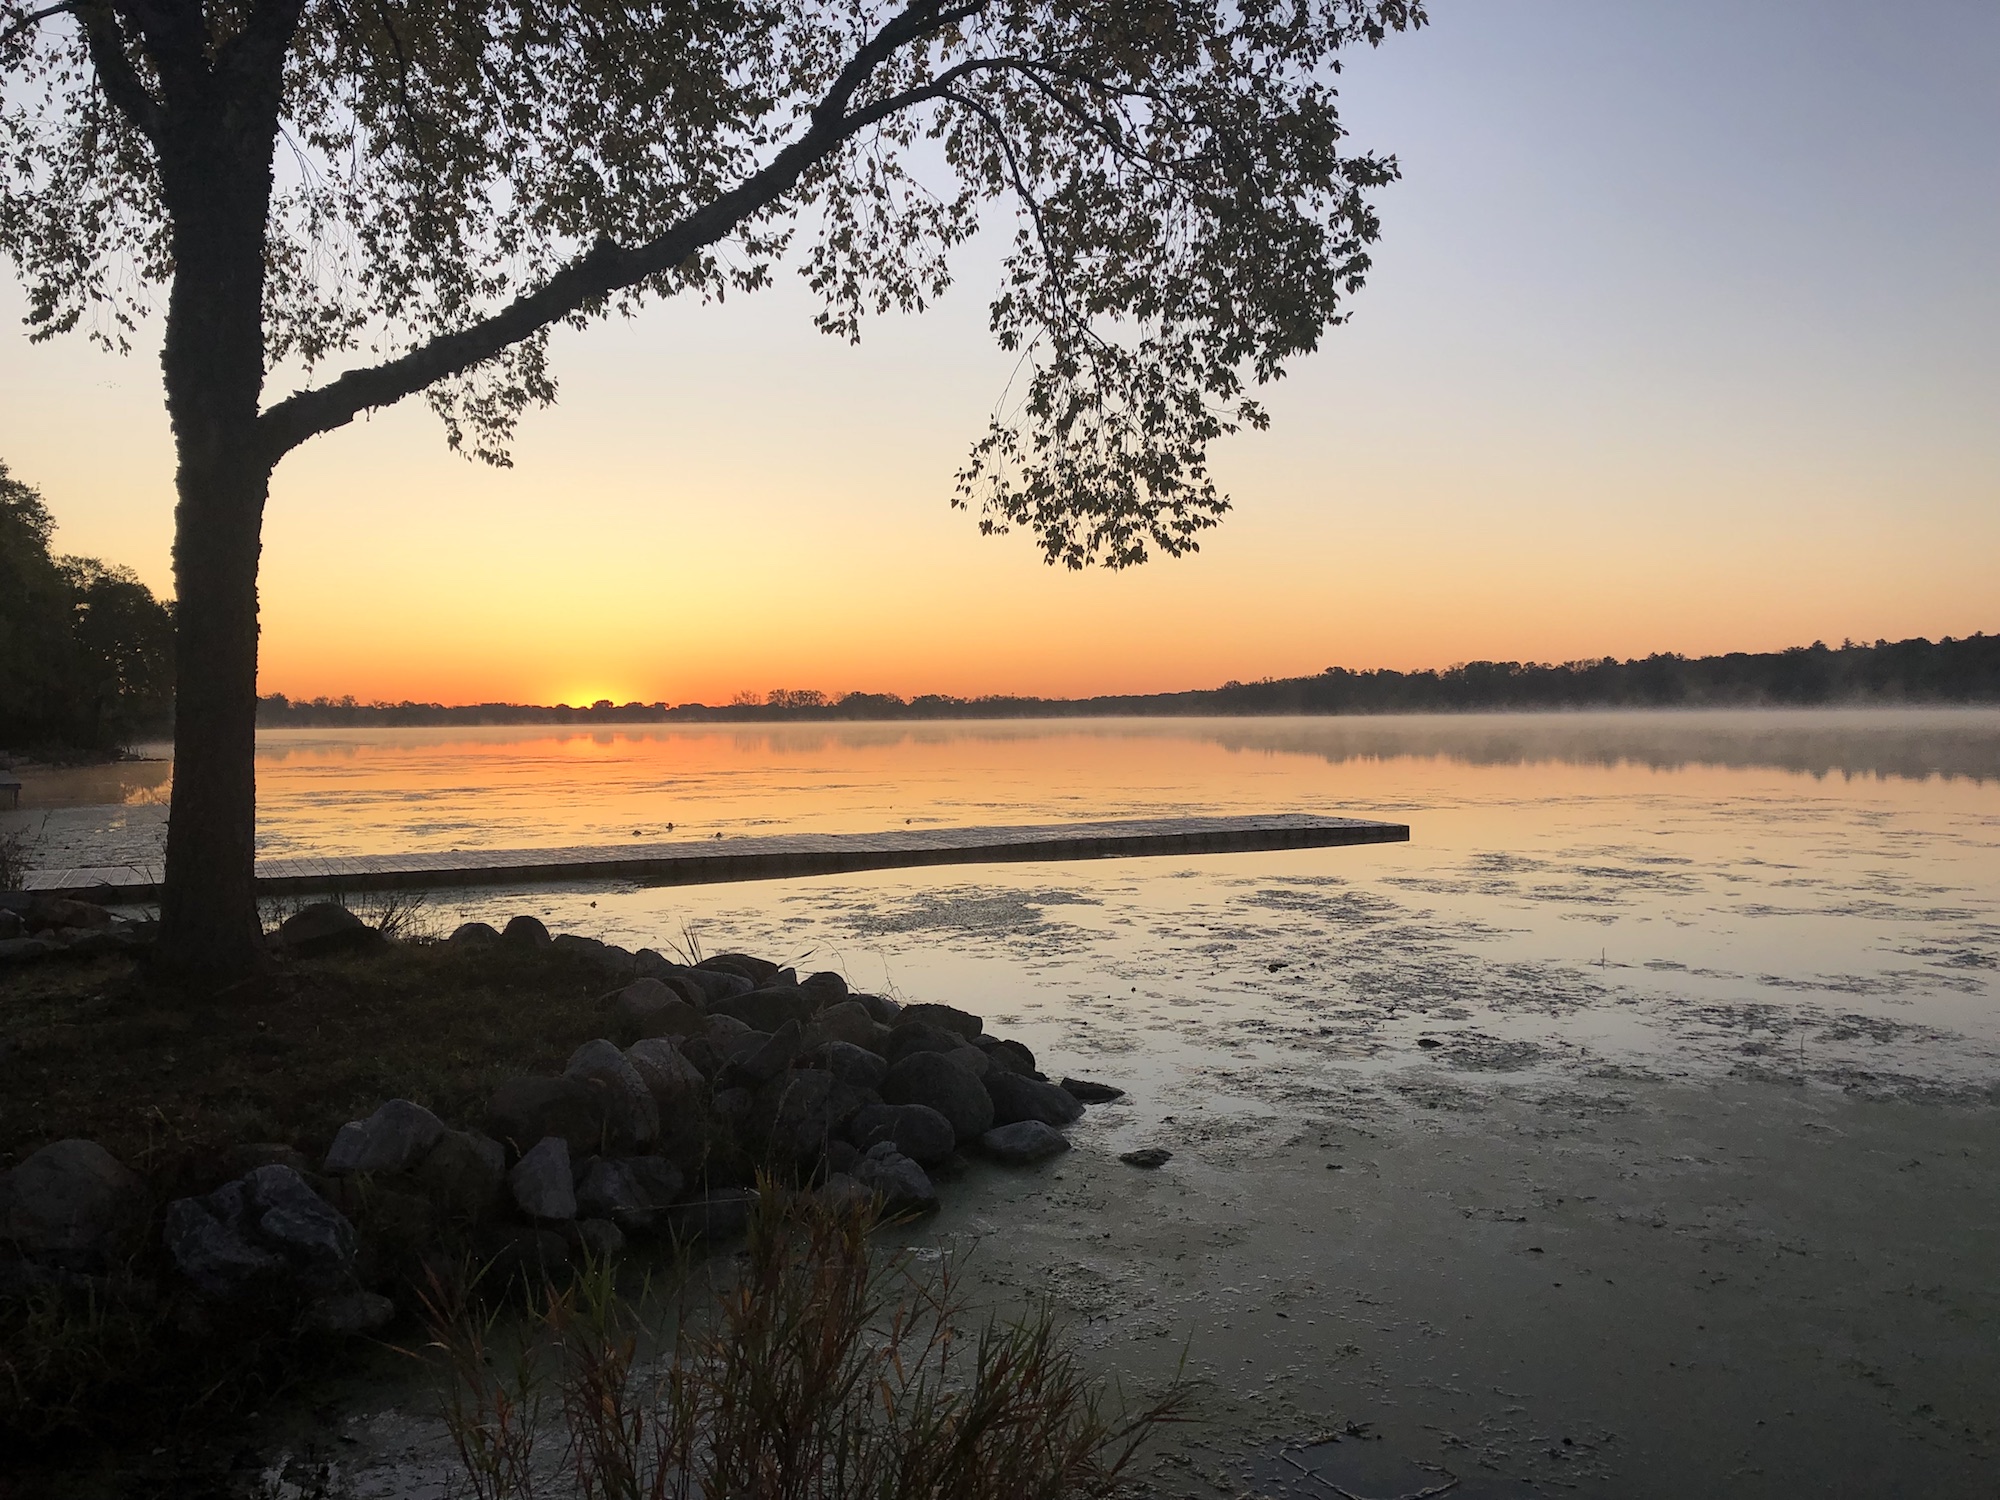 Lake Wingra on October 8, 2019.